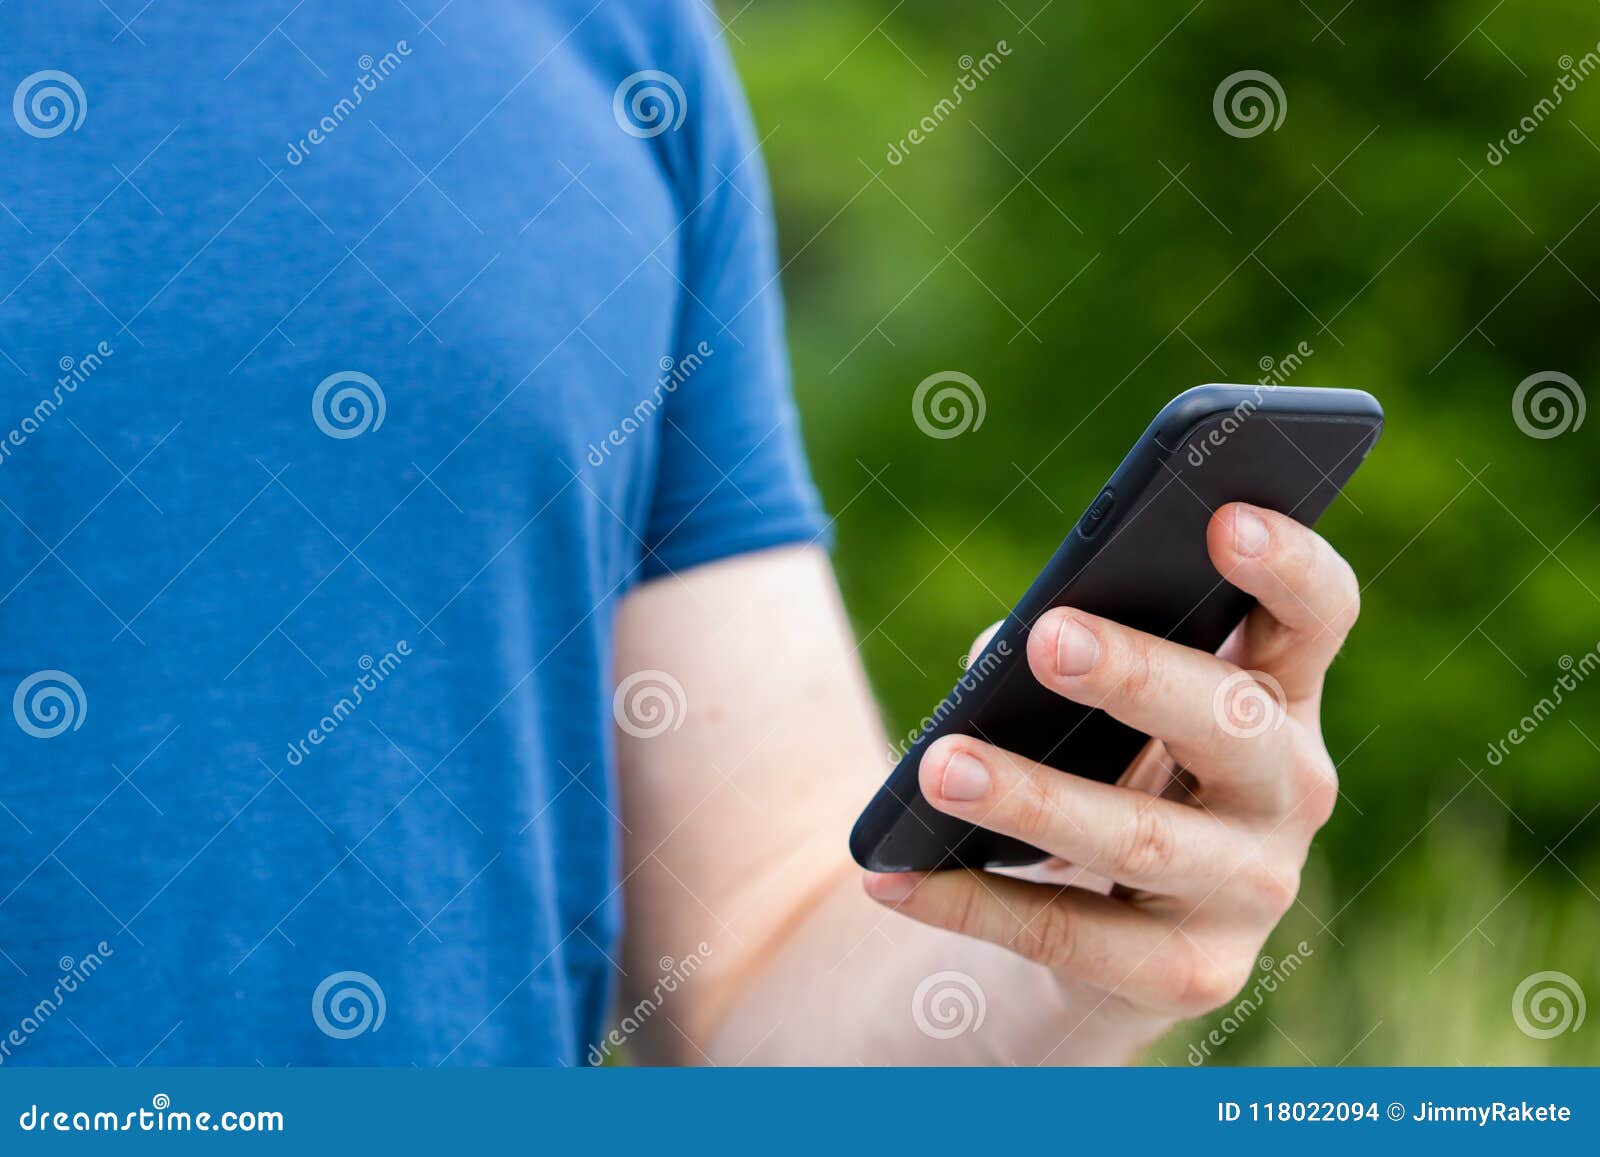 Взять телефон в аренду. Смартфон в руке. Человек держит телефон в руке. Рука держит смартфон. Человек держит смартфон в руке.